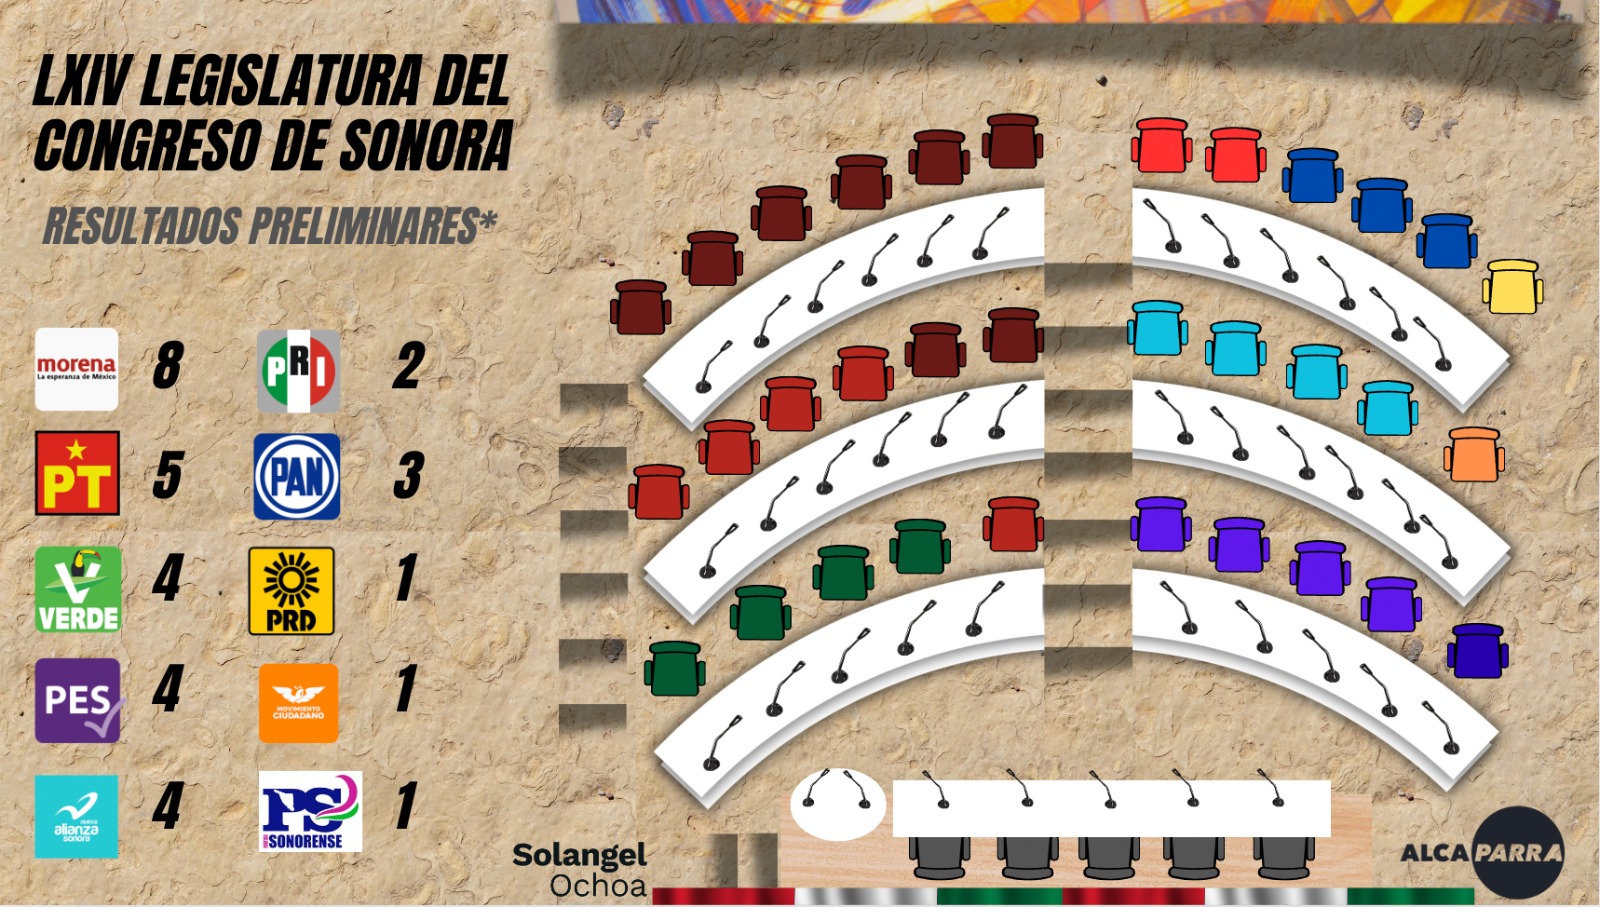 Así pinta la nueva Legislatura del Congreso del Estado de Sonora